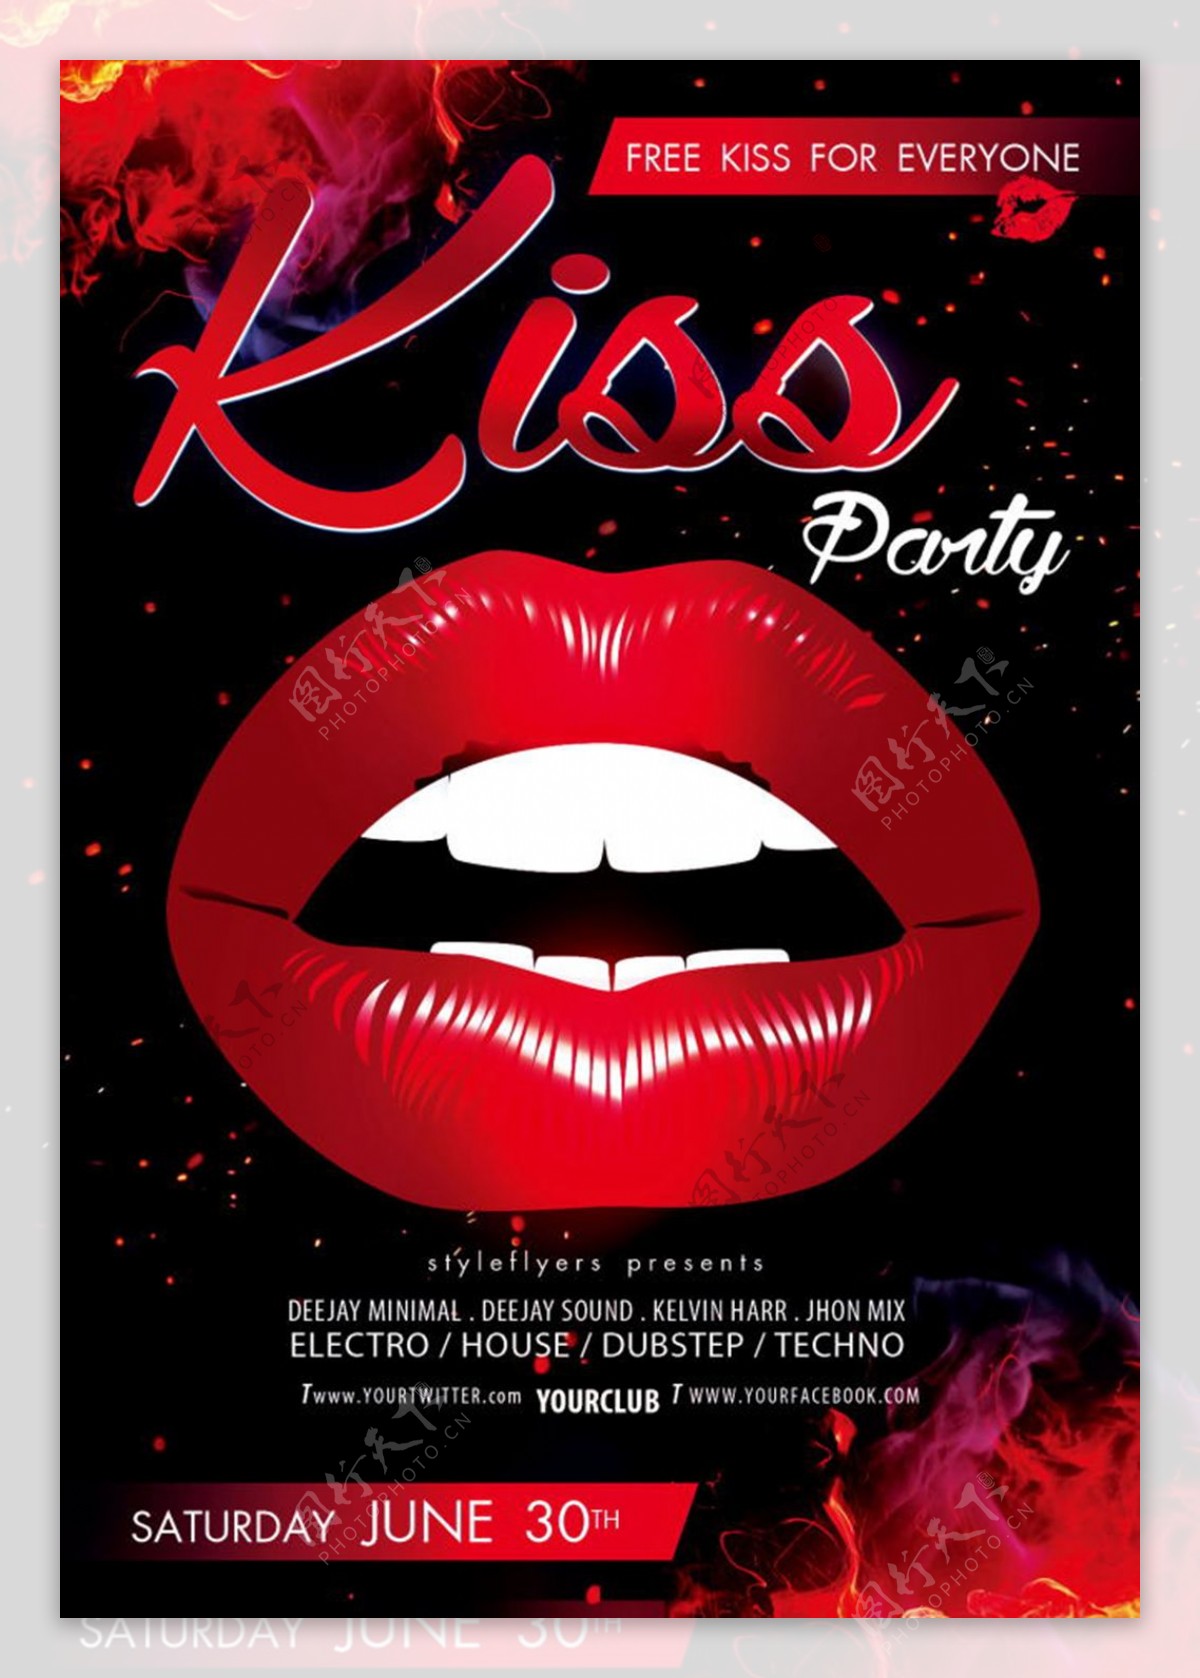 酒吧KISS派对海报